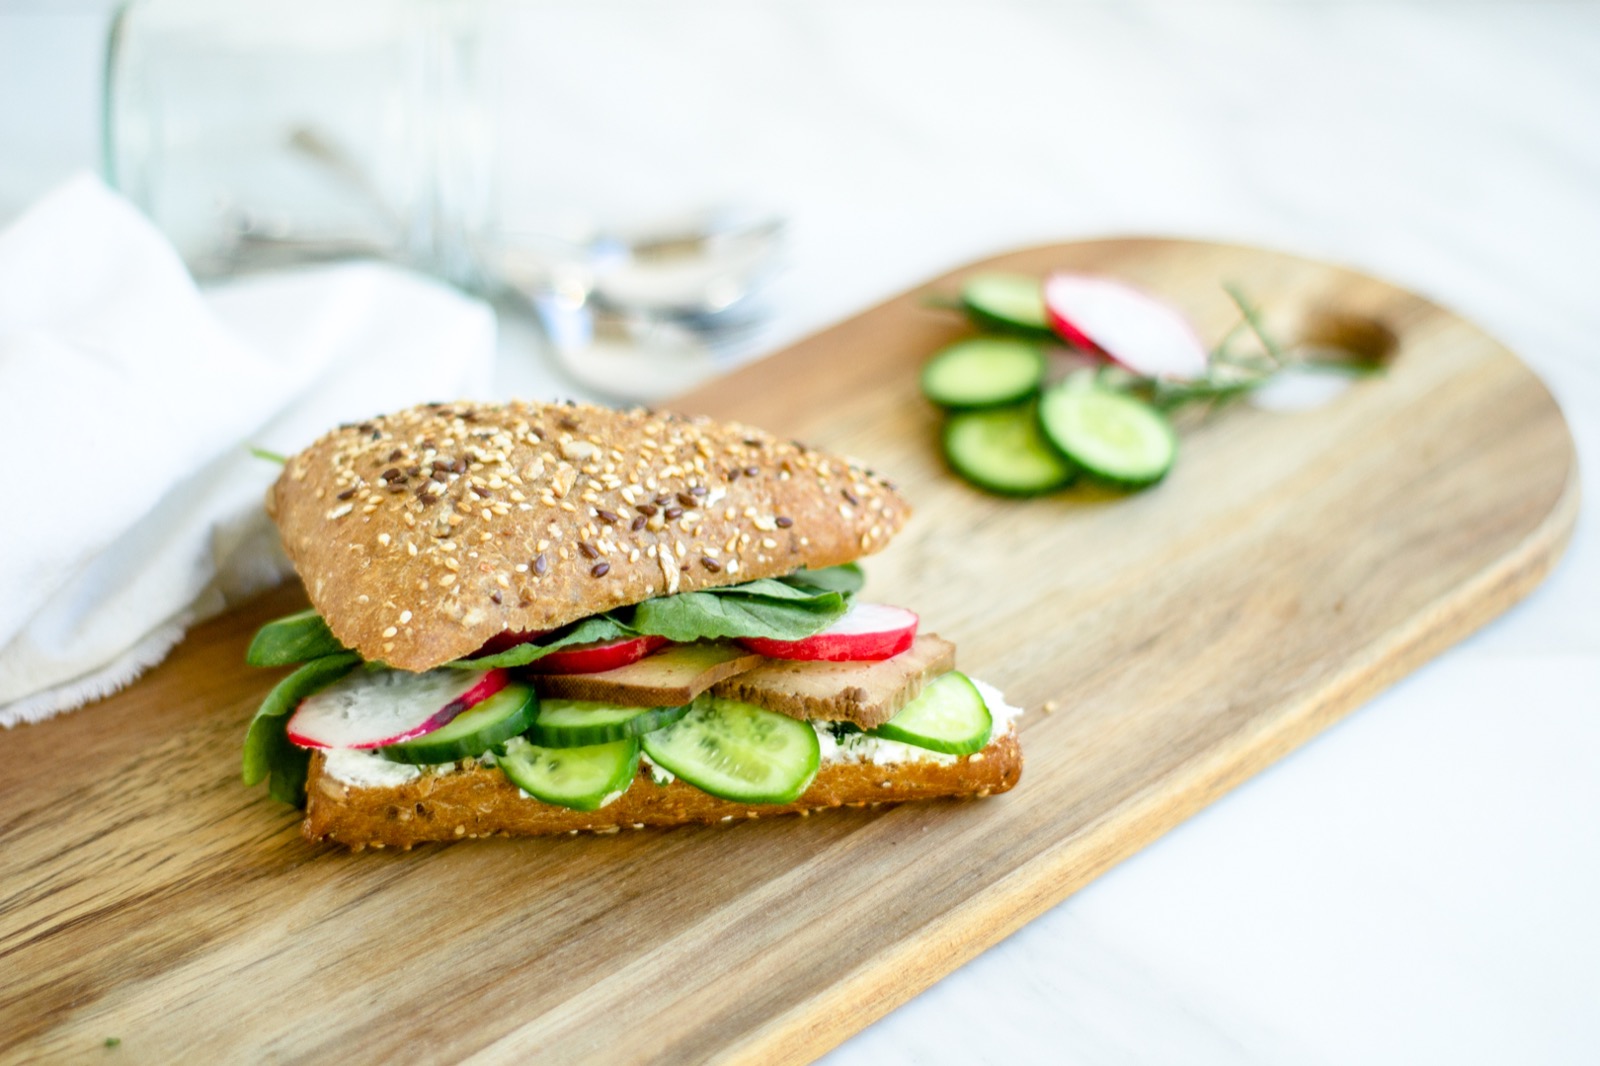 Veganes Sandwich gesund und schnell gemacht. Mit Proteinen und Vitaminen.